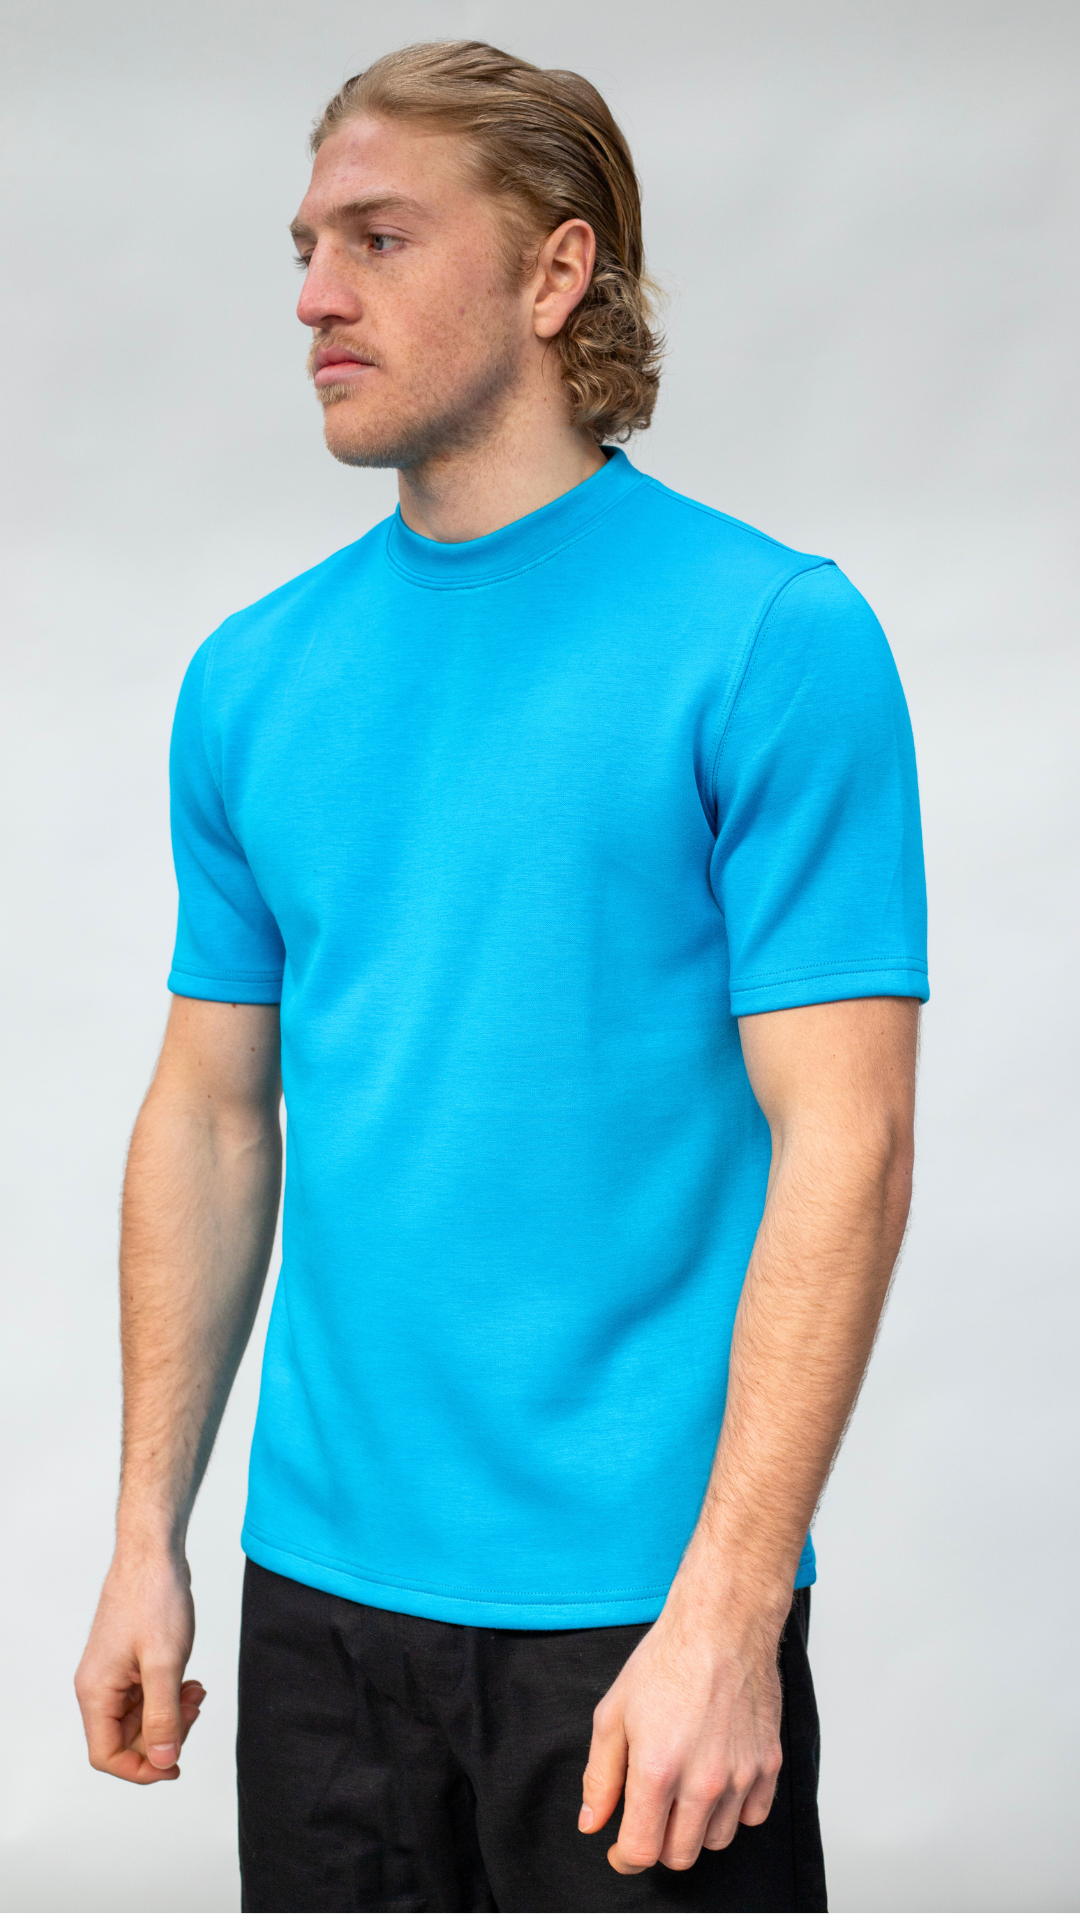 Premium Cotton T Shirt - Light Blue